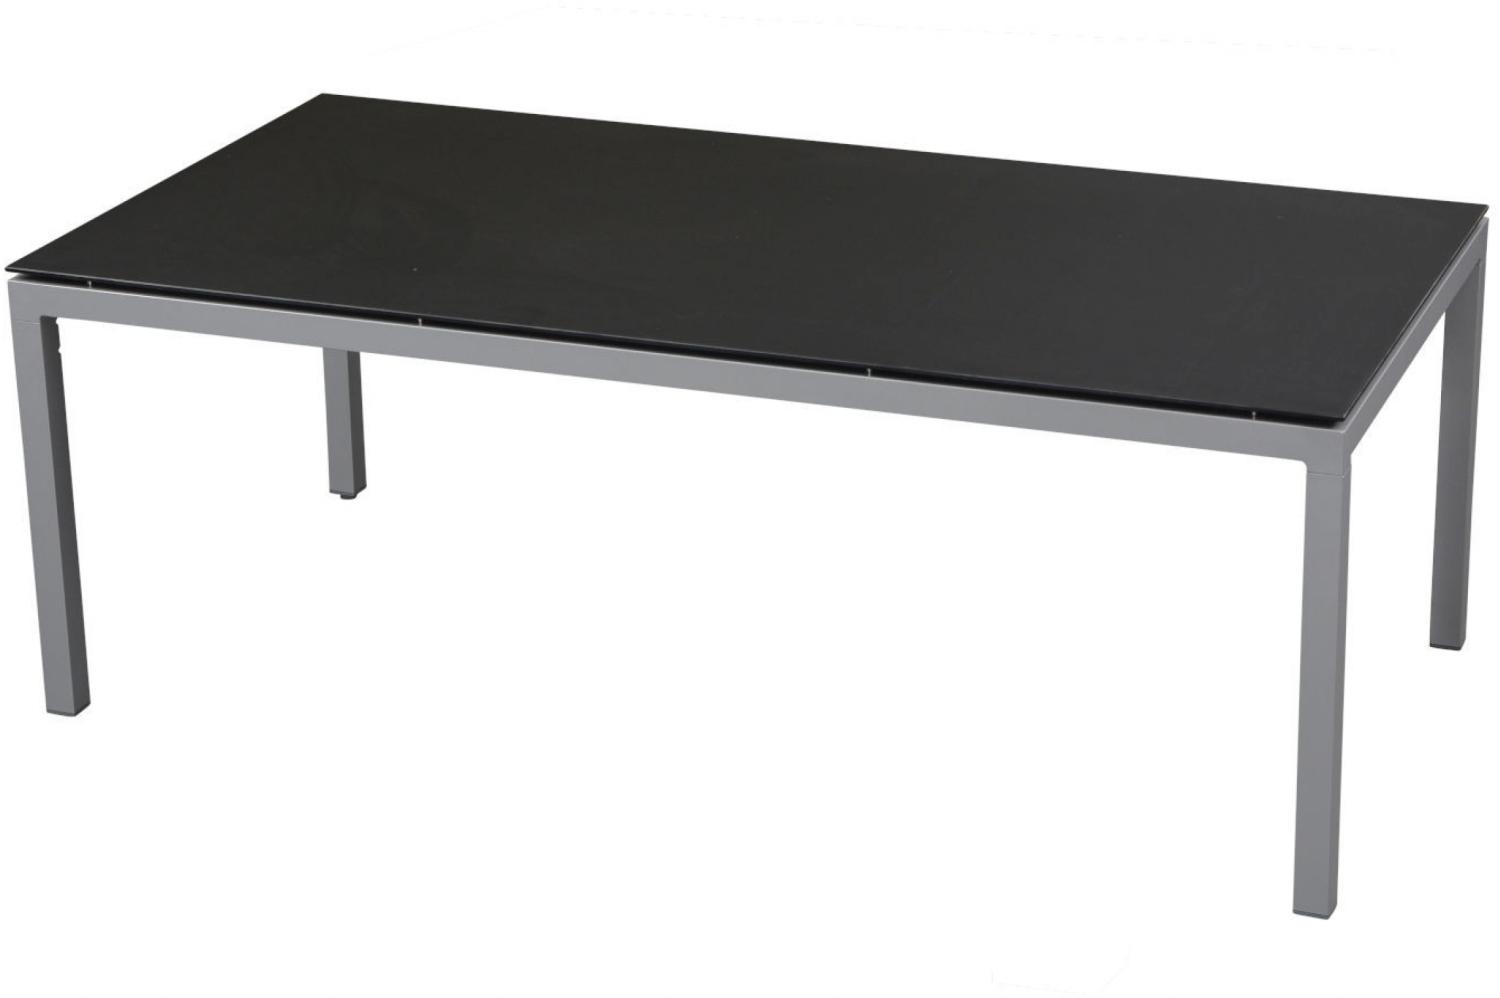 Inko Gartentisch Aluminium graphit 160x90 cm Terrassentisch Tischplatte nach Wahl Deropal weiß Bild 1